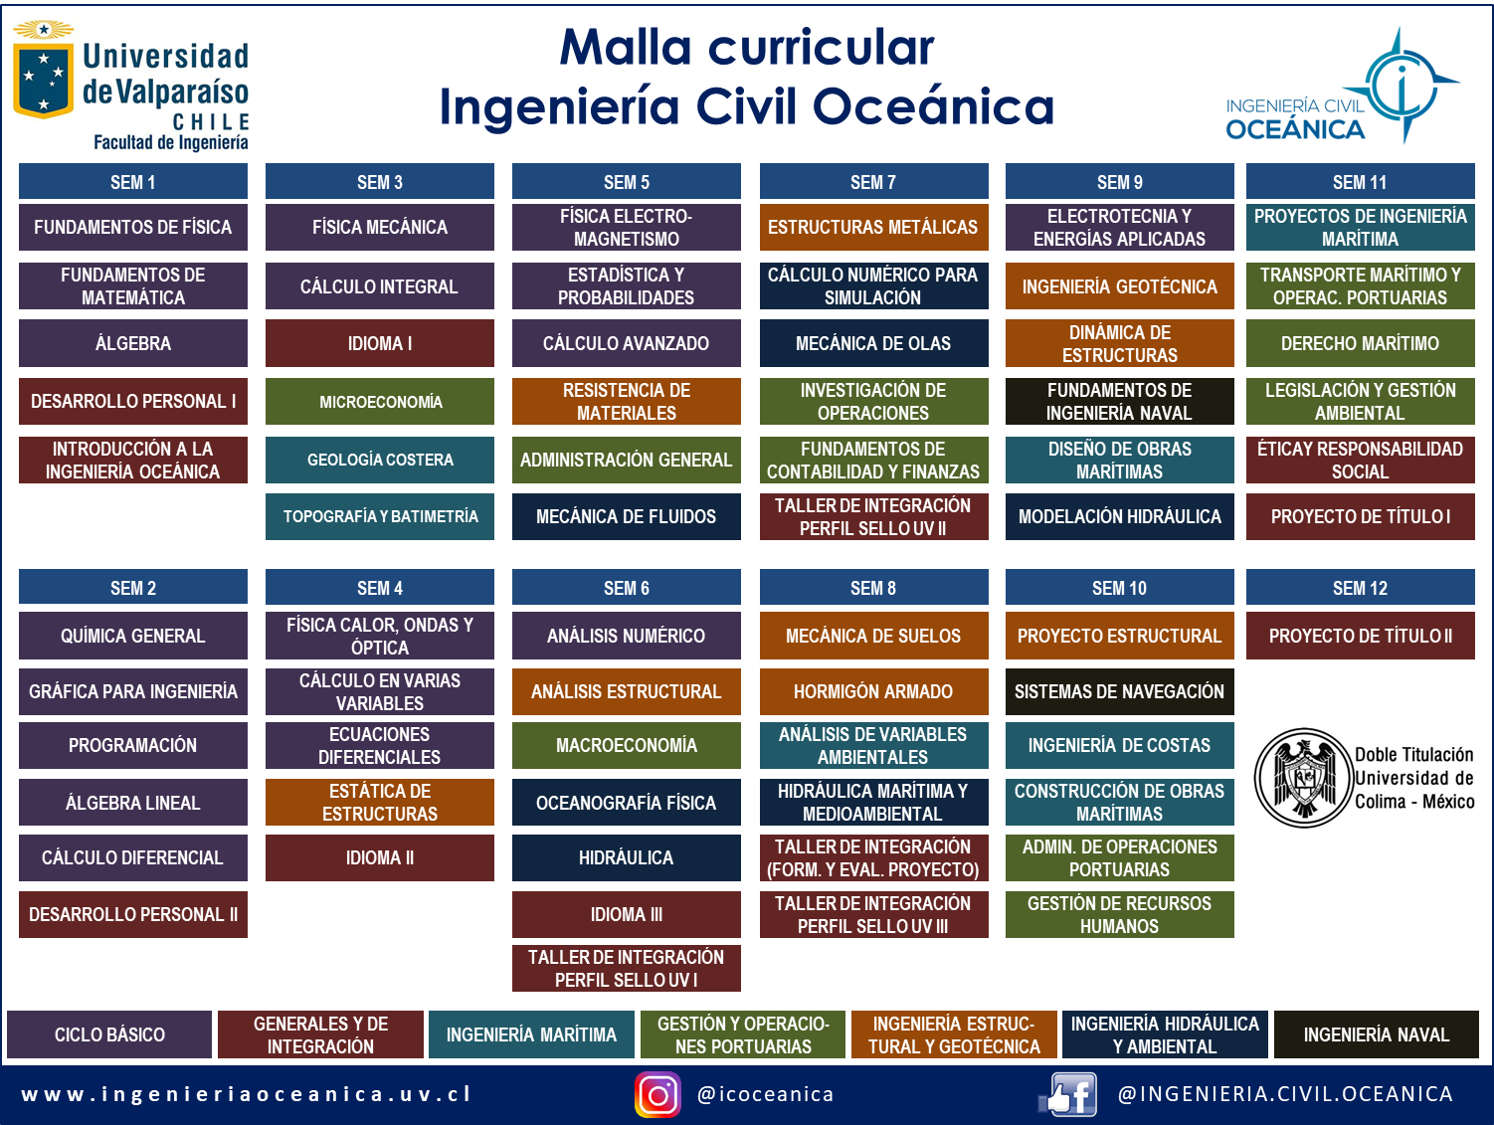 Malla curricular por semestre categorizado por áreas curriculares